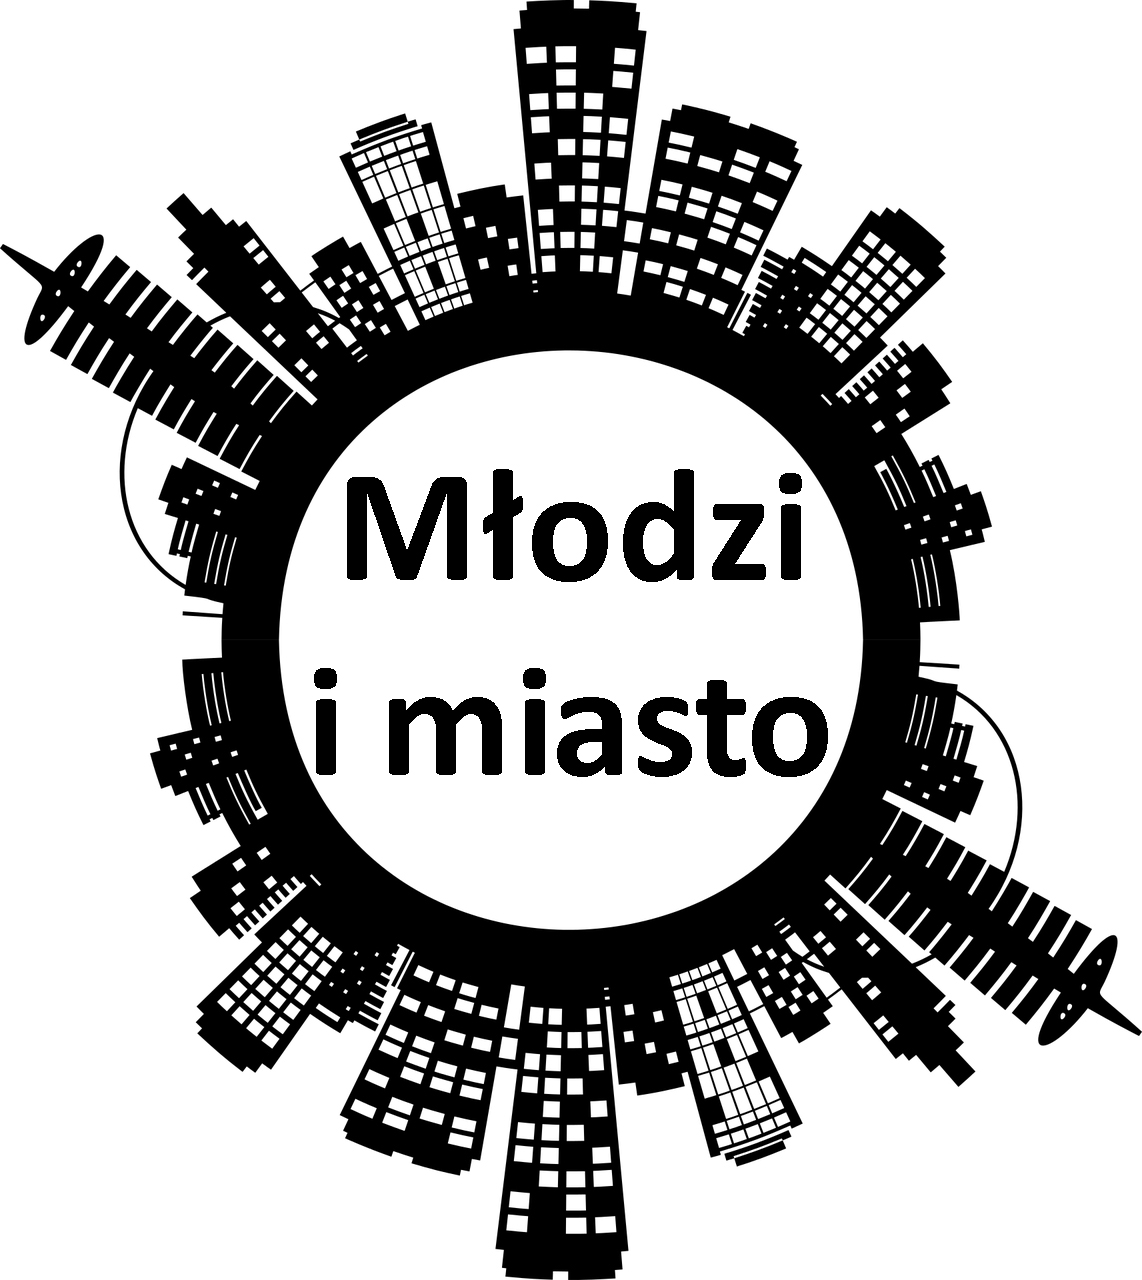 logo konkursu naokoło budynki a w środku napis młodzi i miasto